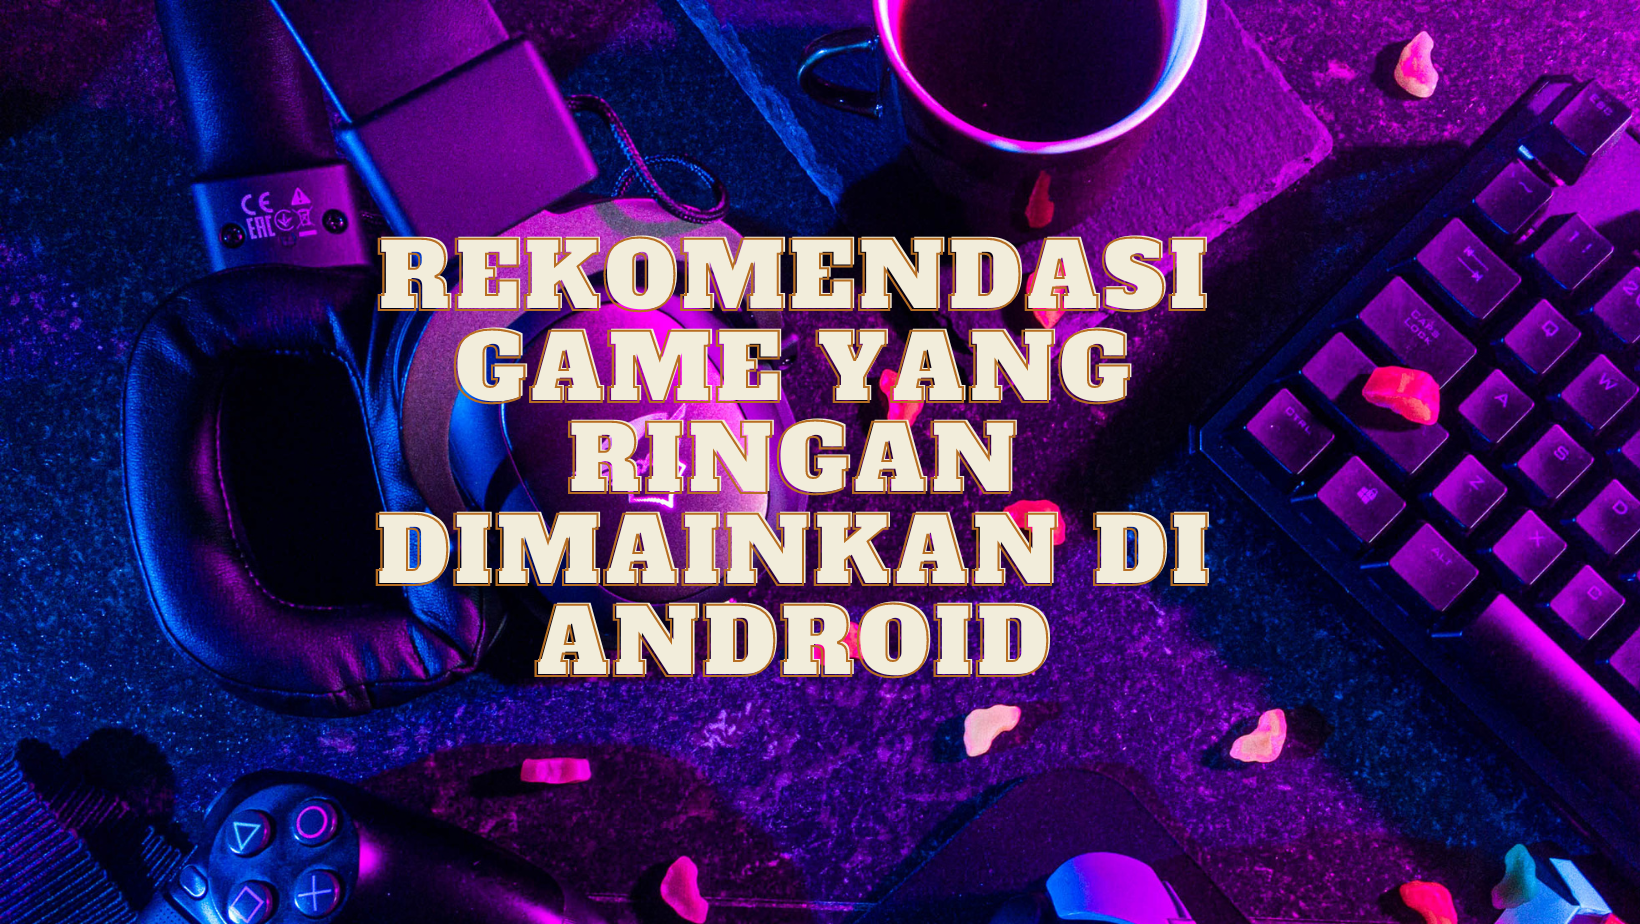 Game yang Ringan Dimainkan di android